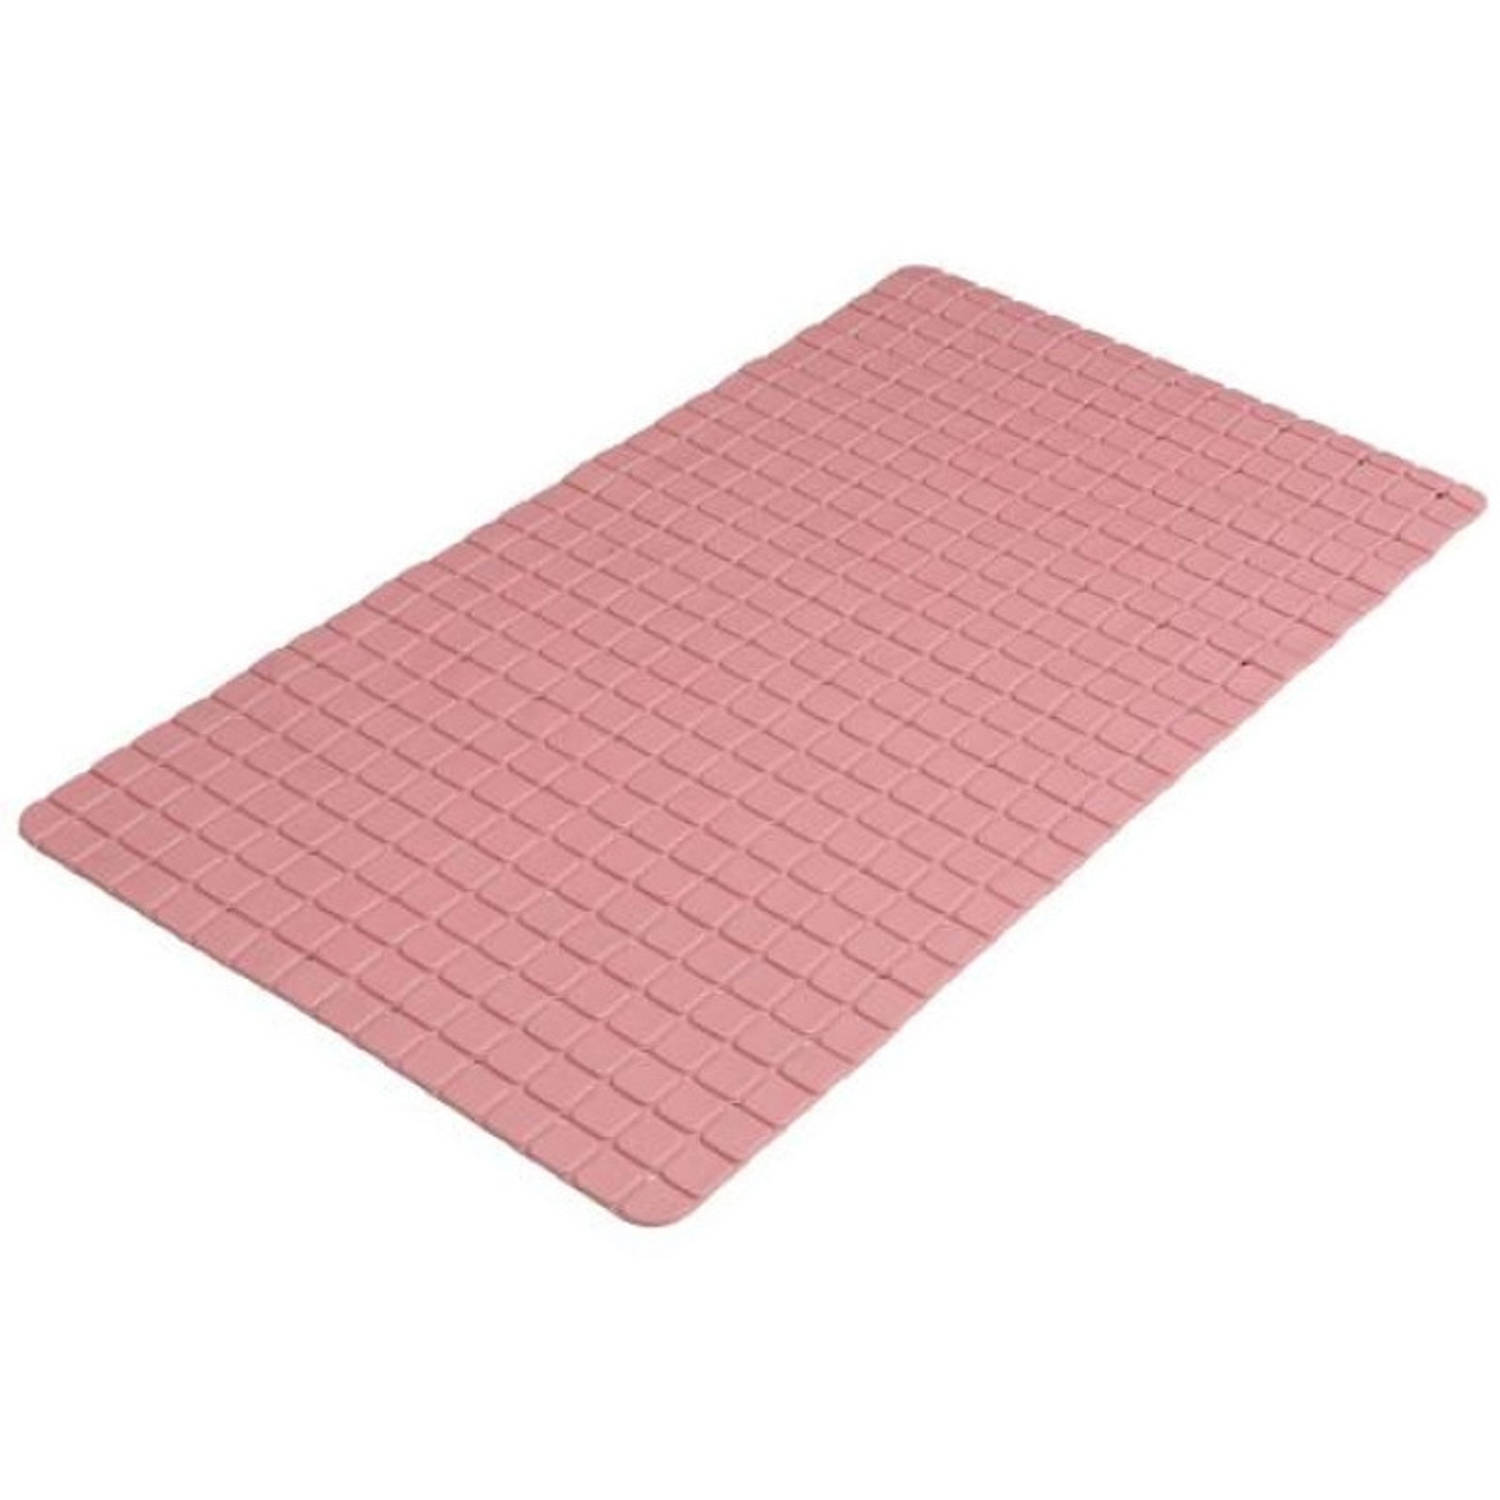 Urban Living Badkamer/douche anti slip mat - rubber - voor op de vloer - oud roze - 39 x 69 cm